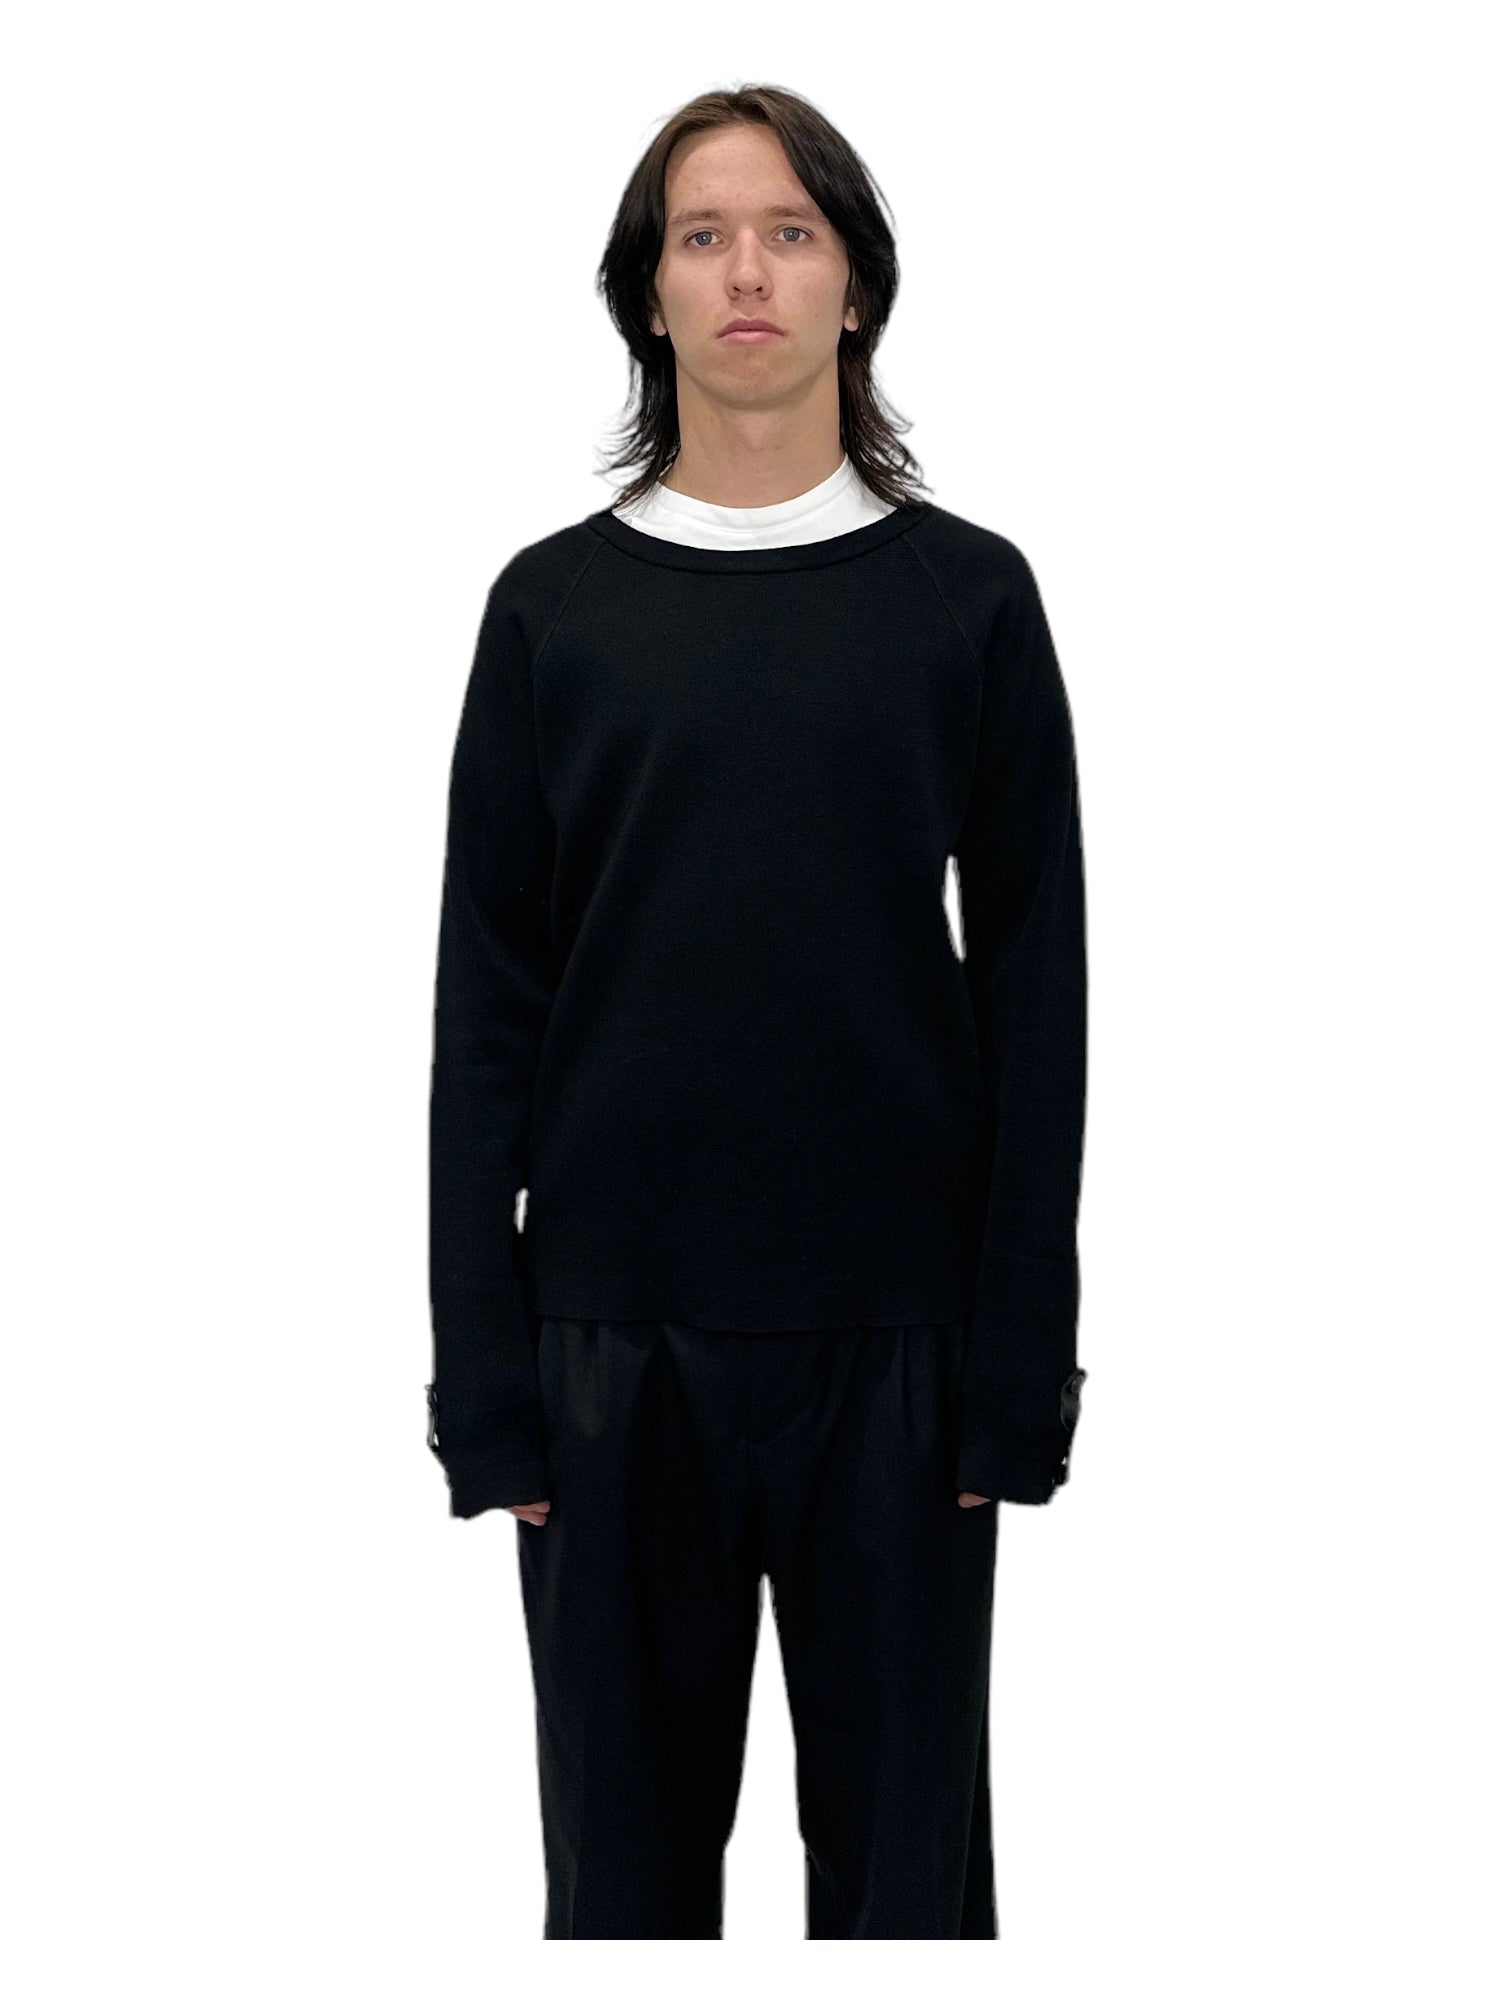 Balenciaga Black Unbranded Crewneck Sweatshirt – Genuine Design